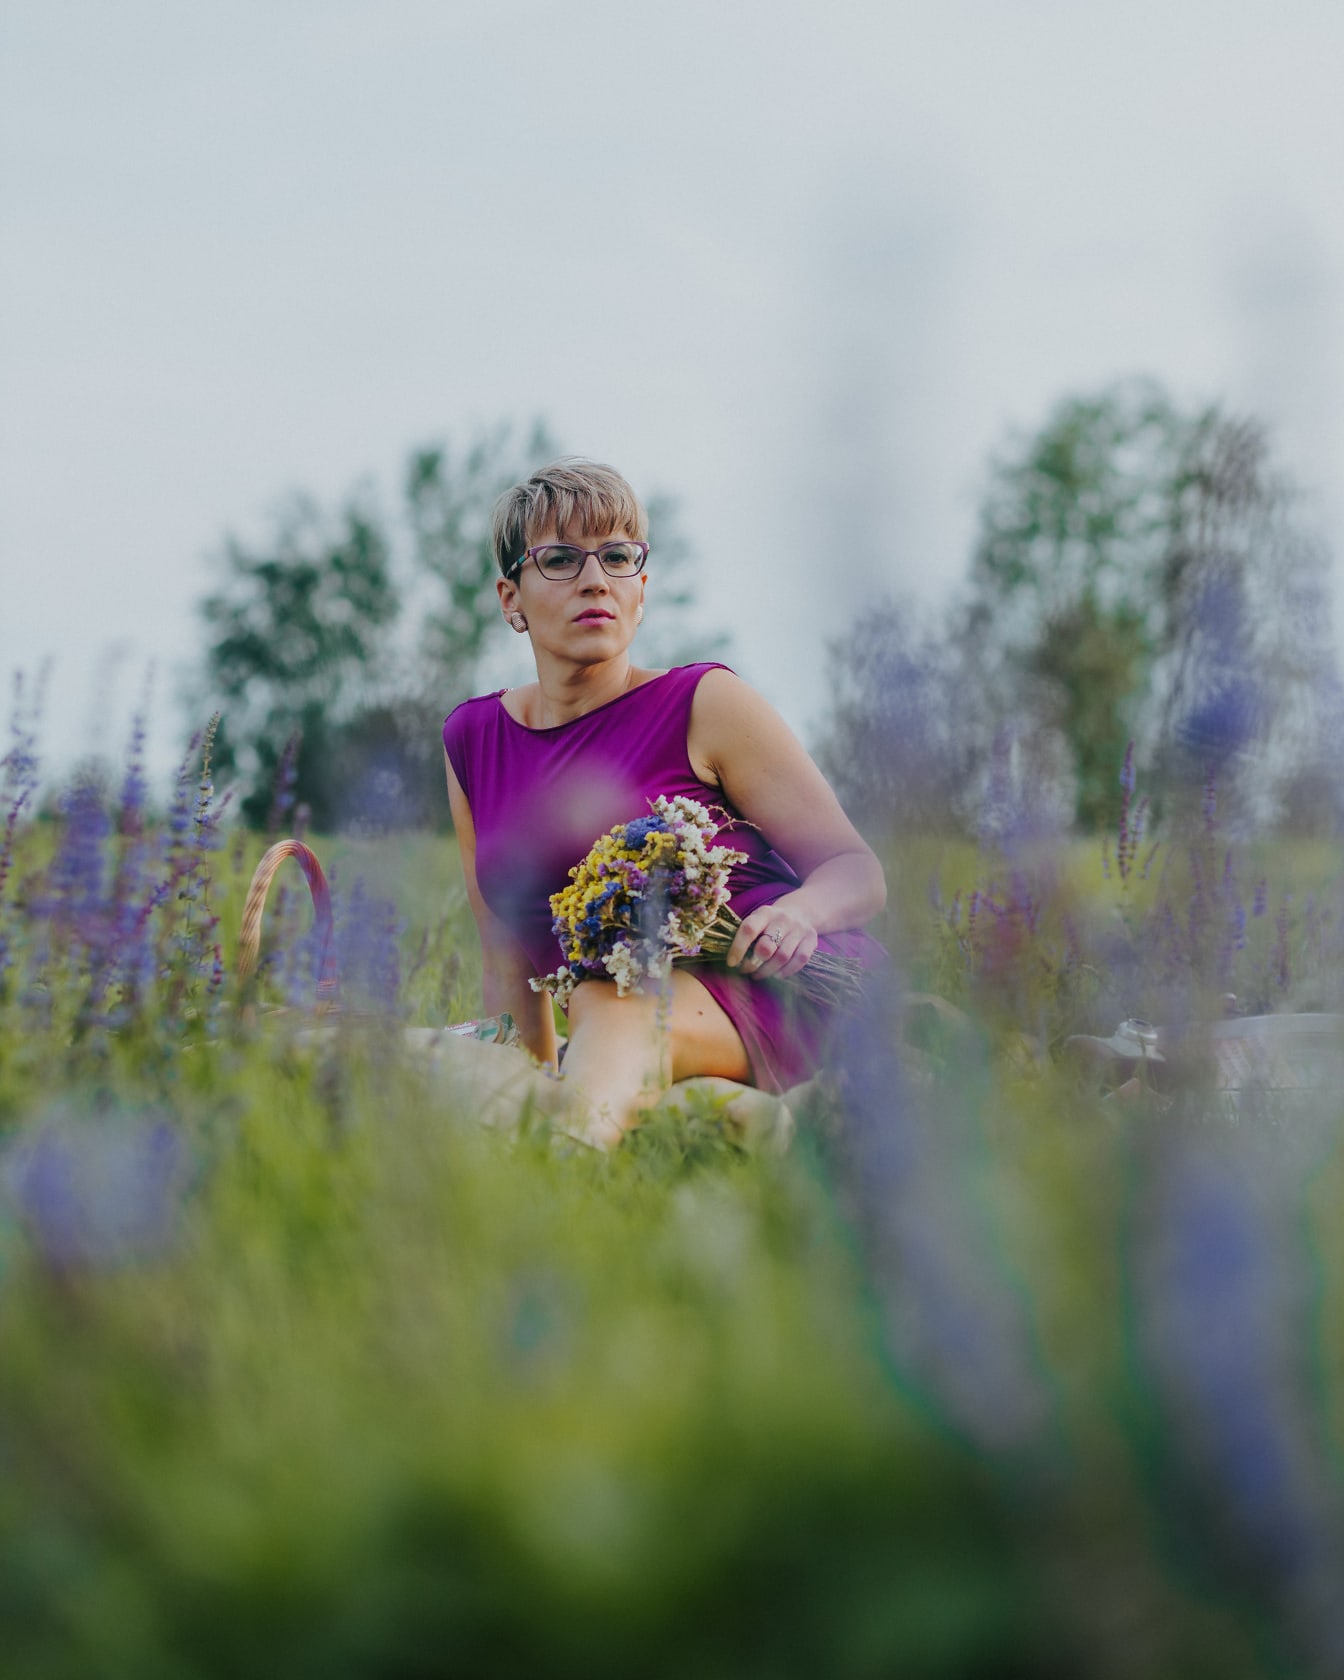 Potret wanita cantik dengan gaun ungu duduk di padang rumput